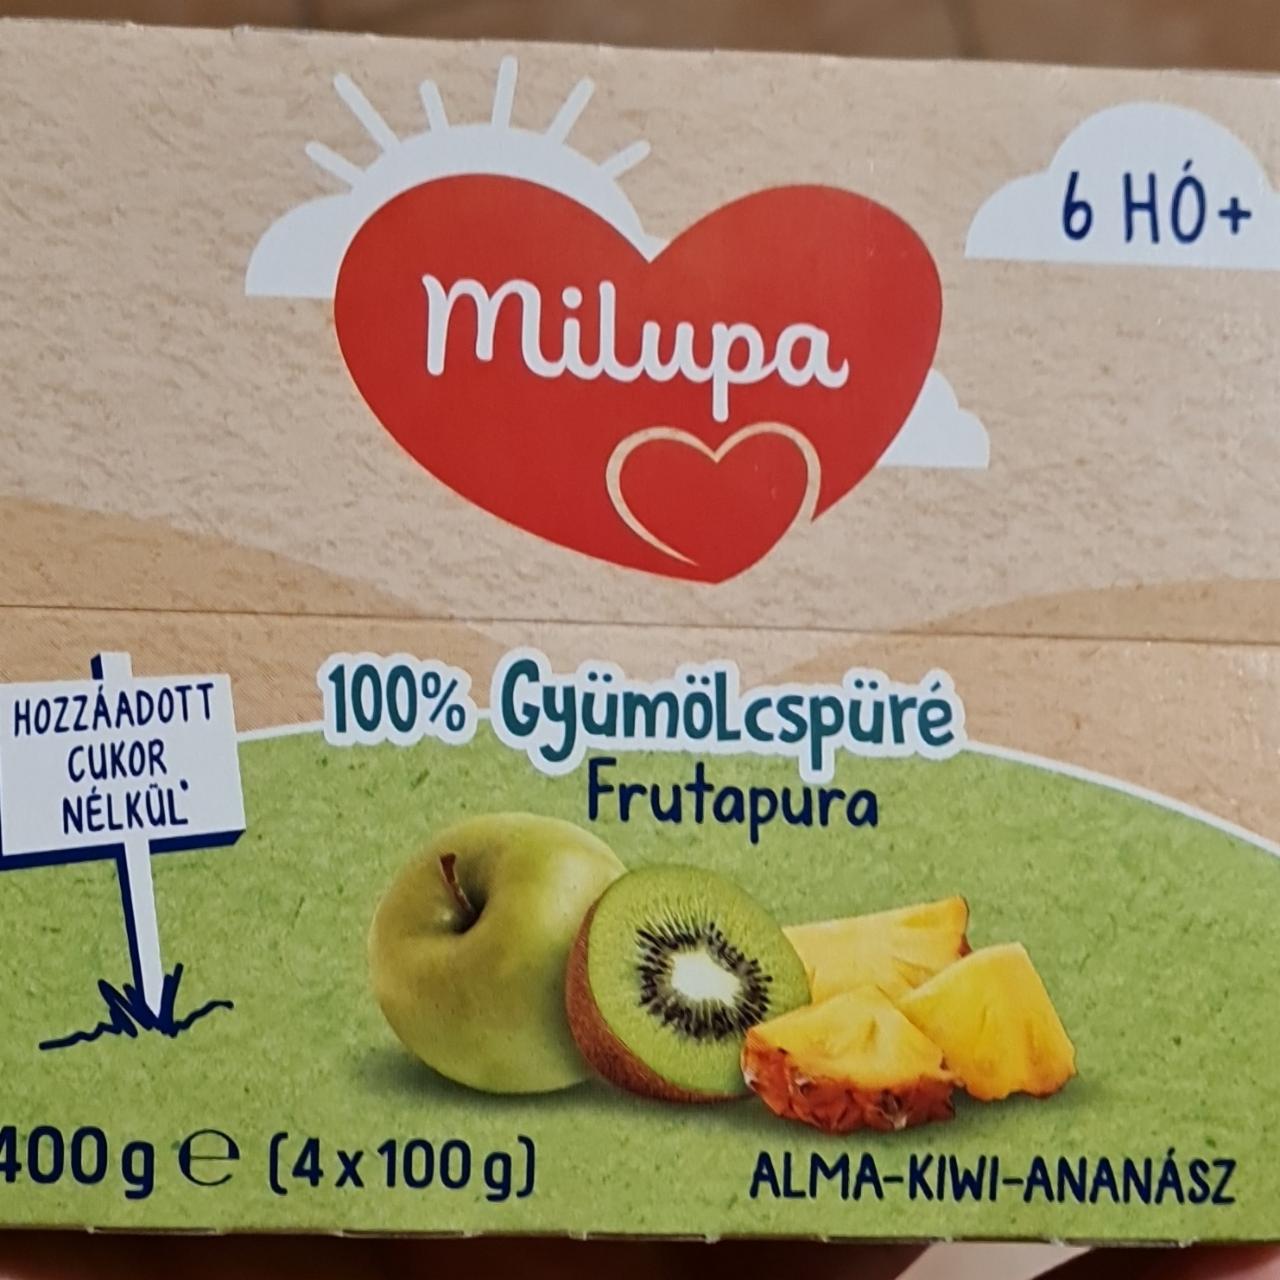 Képek - 100% gyümölcspüré Alma-kiwi-ananász Milupa